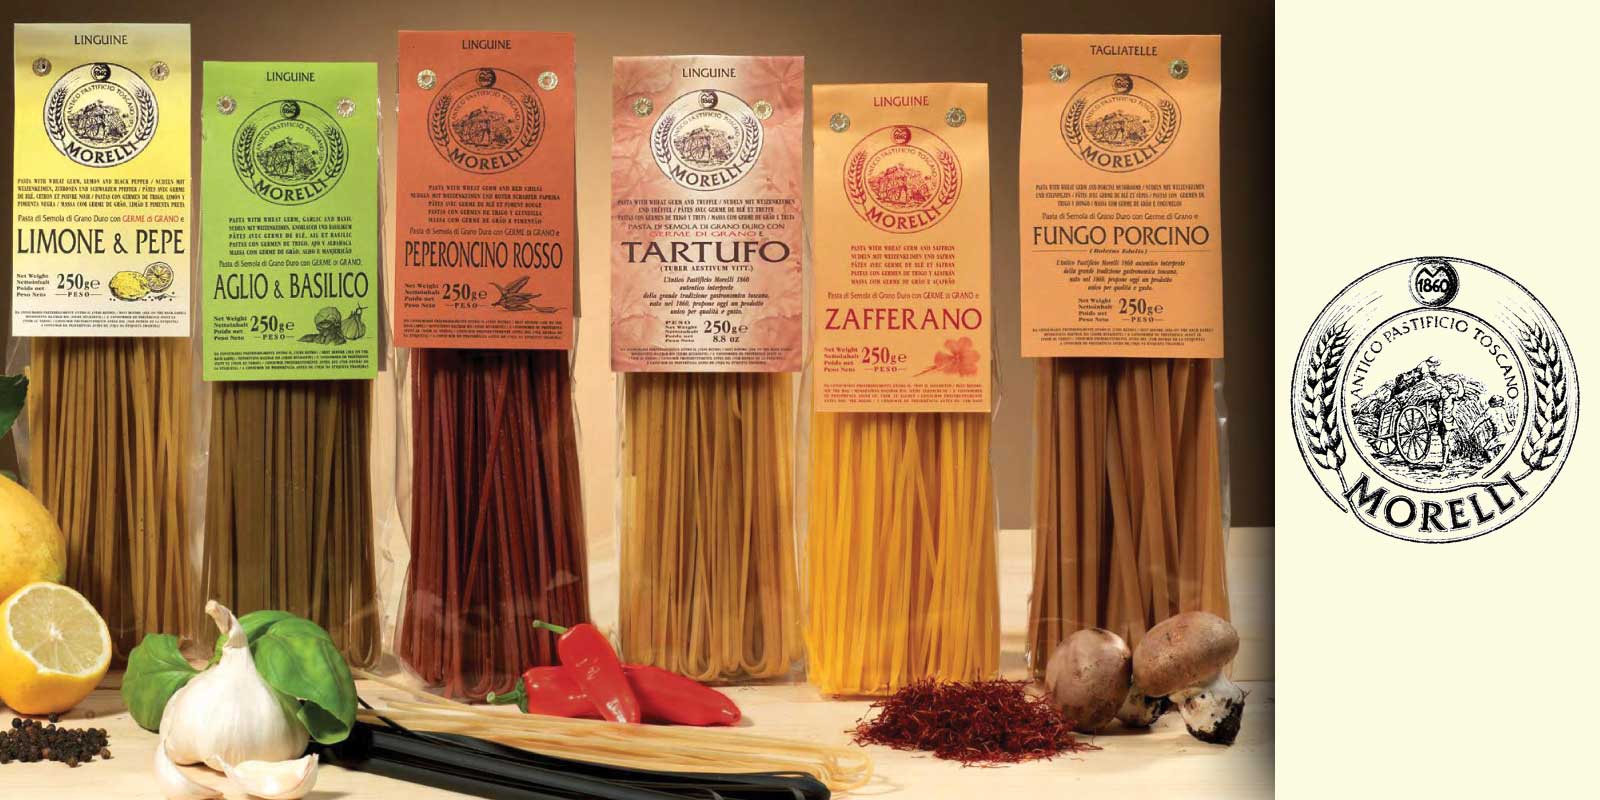 Morelli 1860 - Mie/Pasta dari Italia Produk dari pabrik pasta Morelli kuno memang unik. Rahasianya terletak pada bahan yang tidak ditemukan pada pasta biasa. Itu adalah bibit gandum, inti dari biji-bijian. Ini kaya akan vitamin E, vitamin D dan protein nabati.